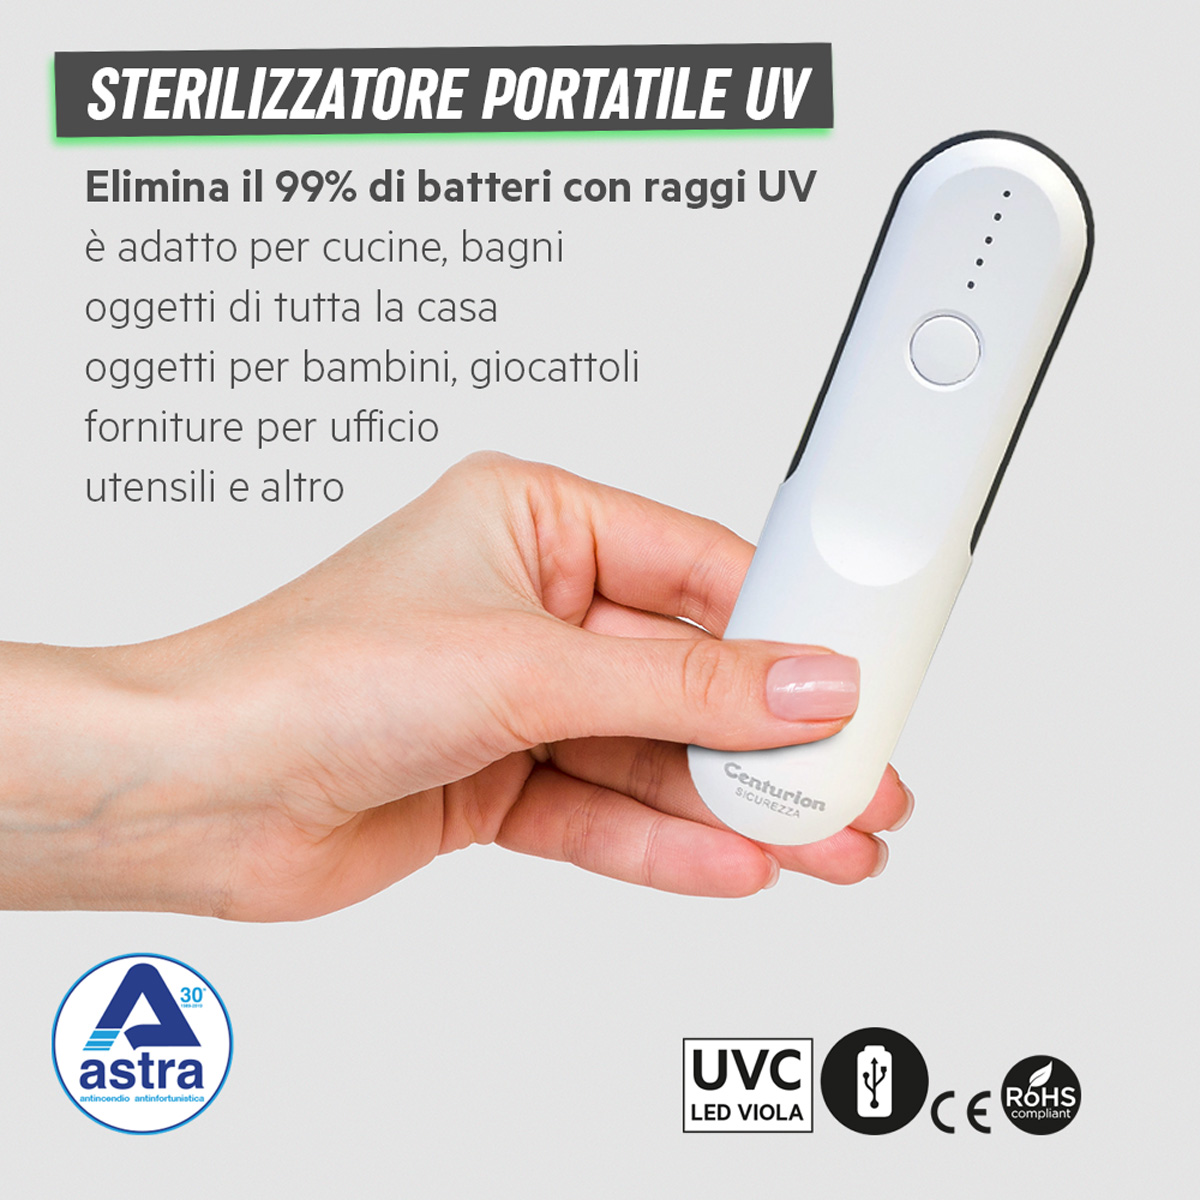 Sterilizzatore UV portatile - Astra